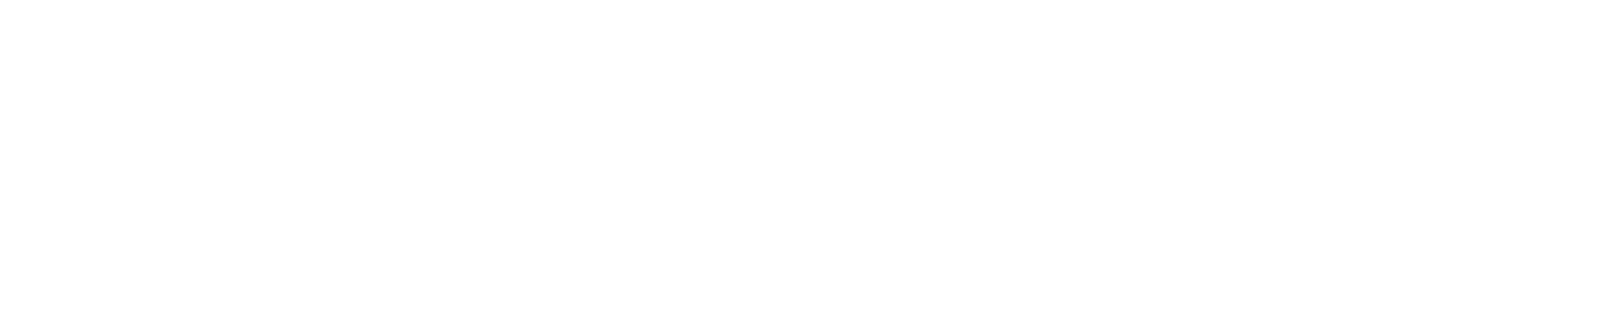 Magnachip logo large for dark backgrounds (transparent PNG)